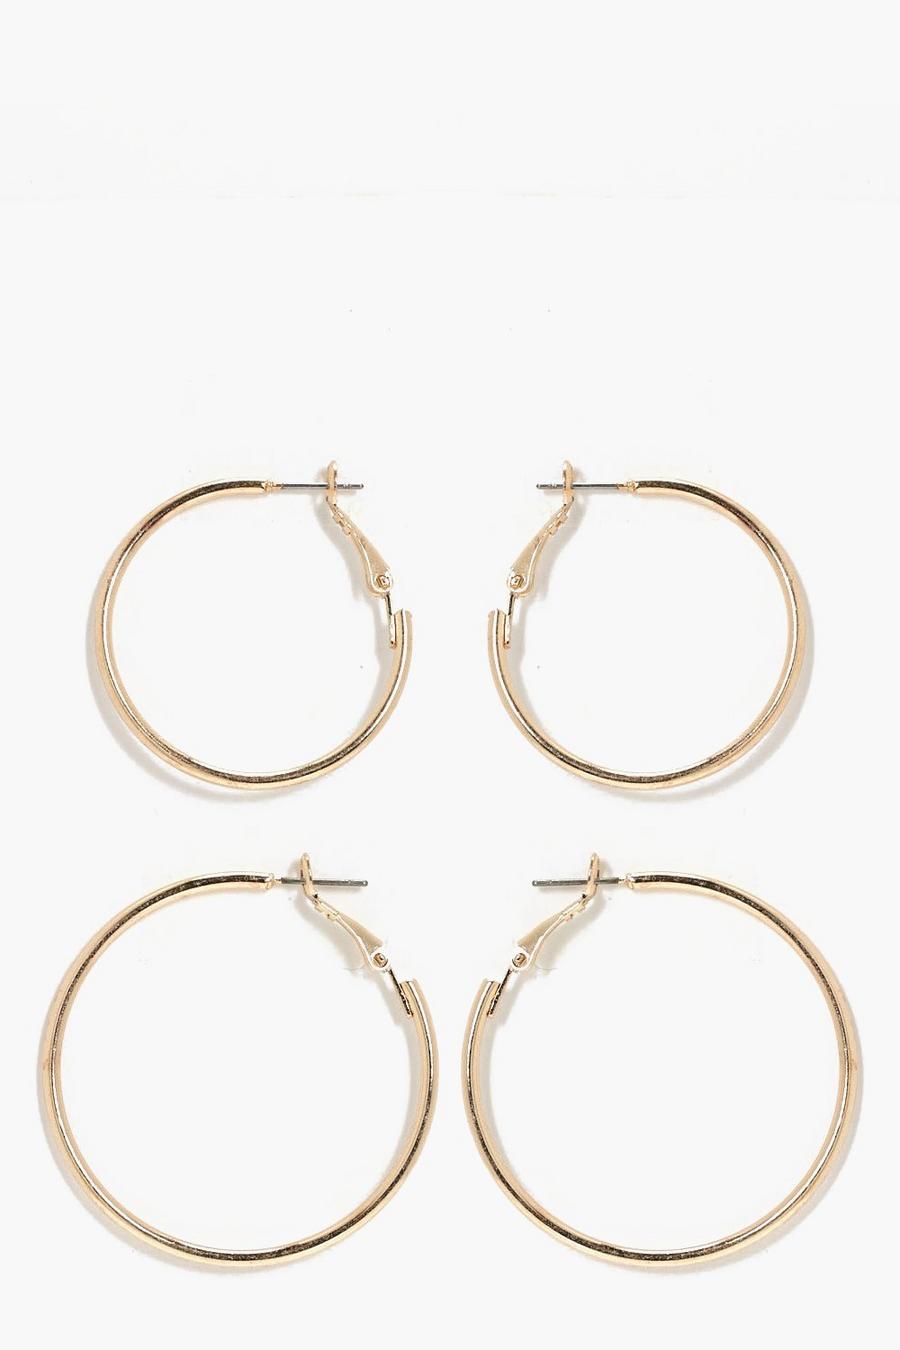 Gold Hoop Earrings 2 Pack